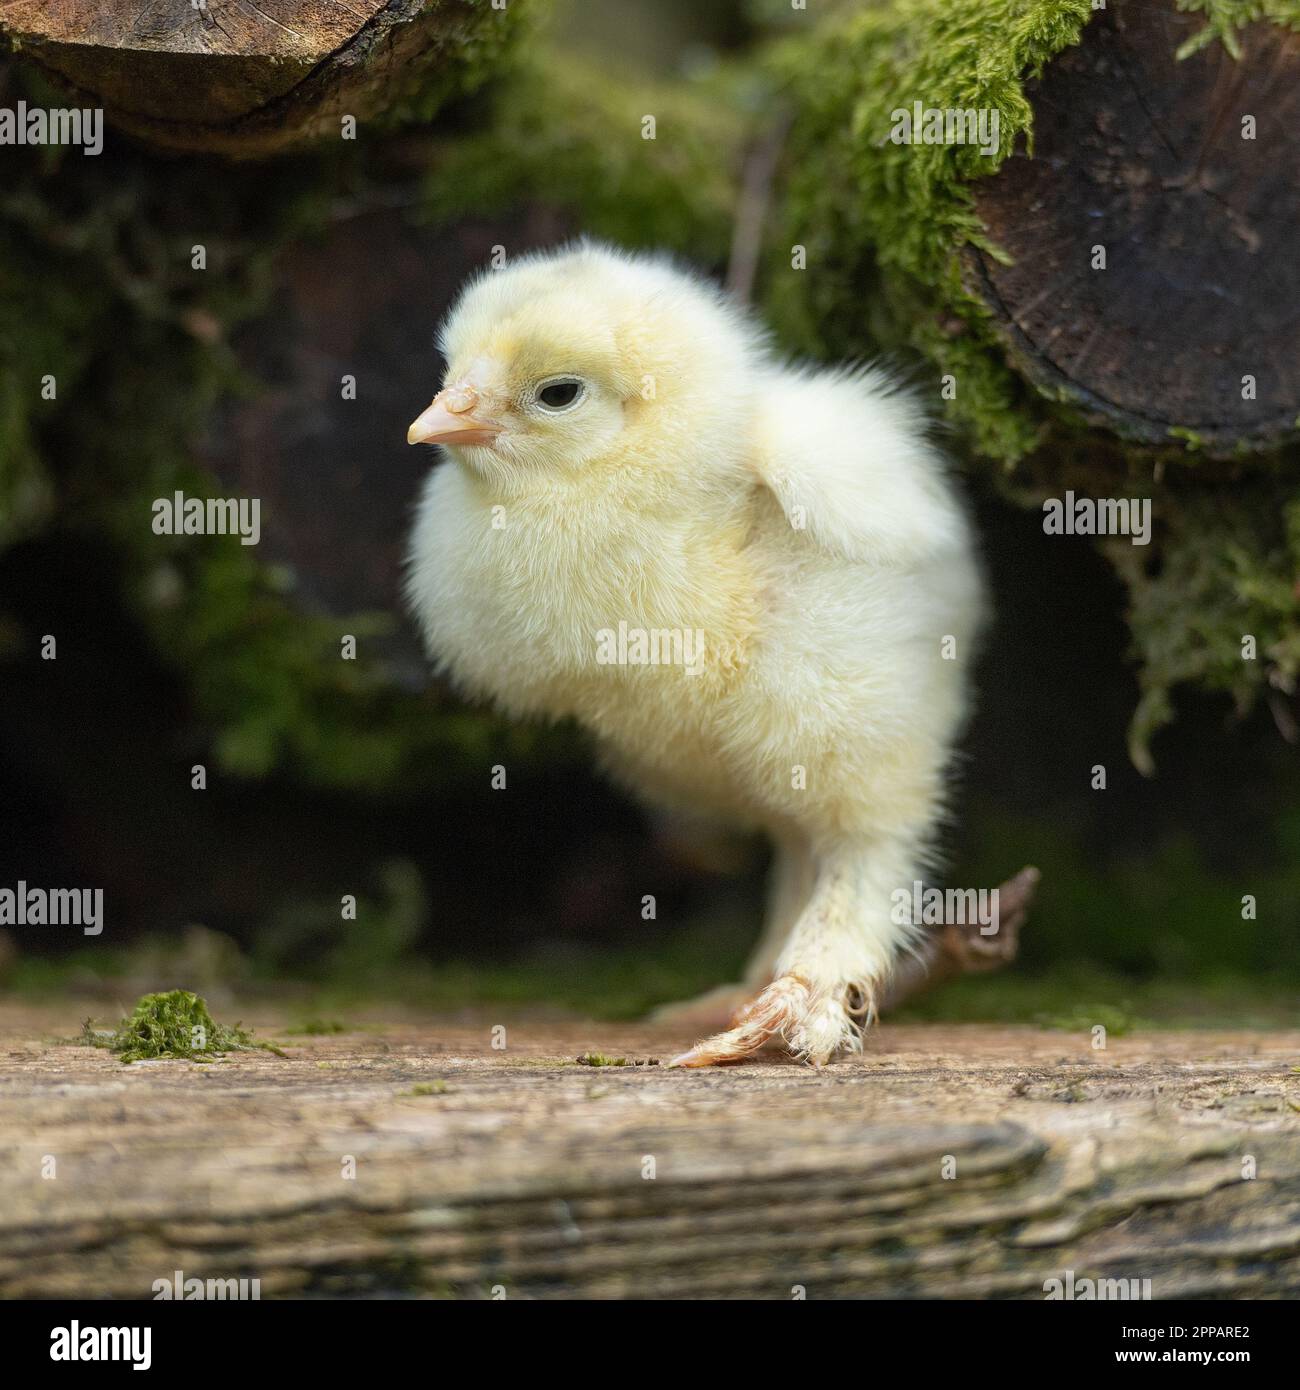 baby chick Stock Photo